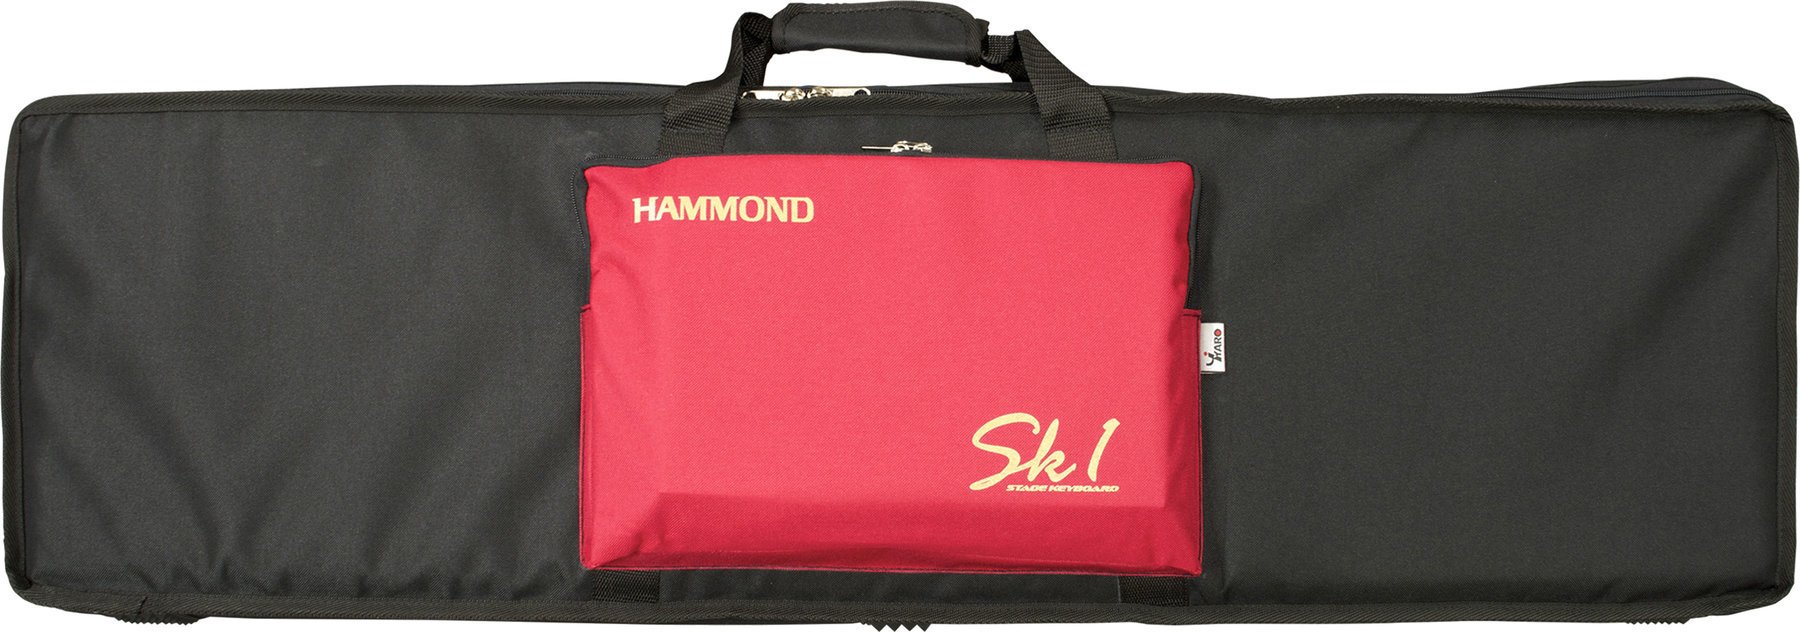 Kosketinsoitinlaukku Hammond Softbag SK1-73